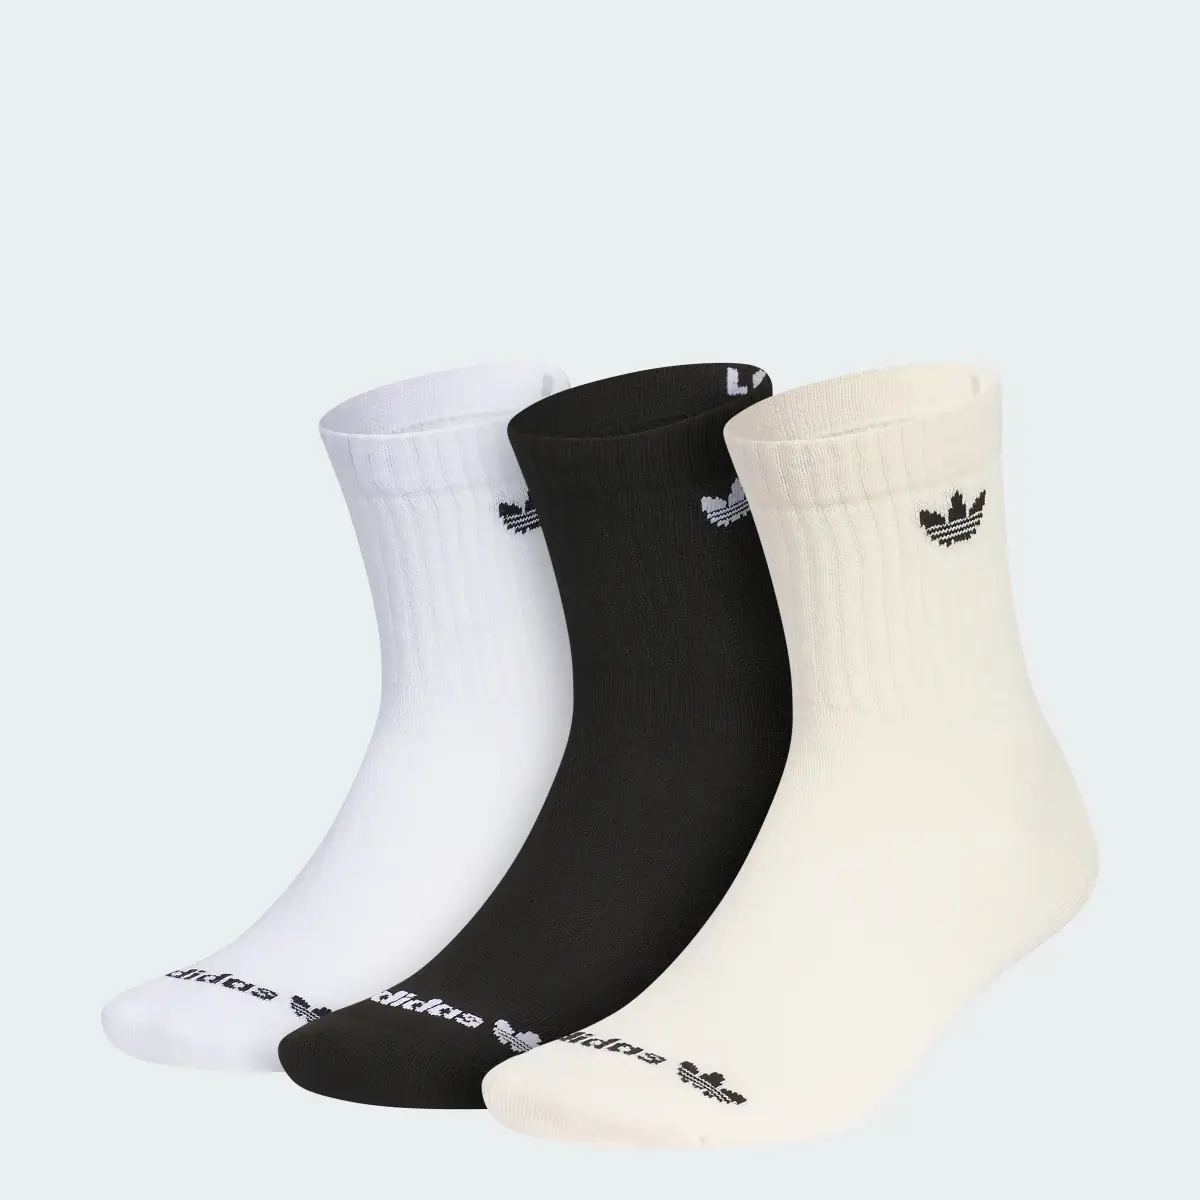 Adidas Originals Trefoil 2.0 3-Pack High Quarter Socks. 1